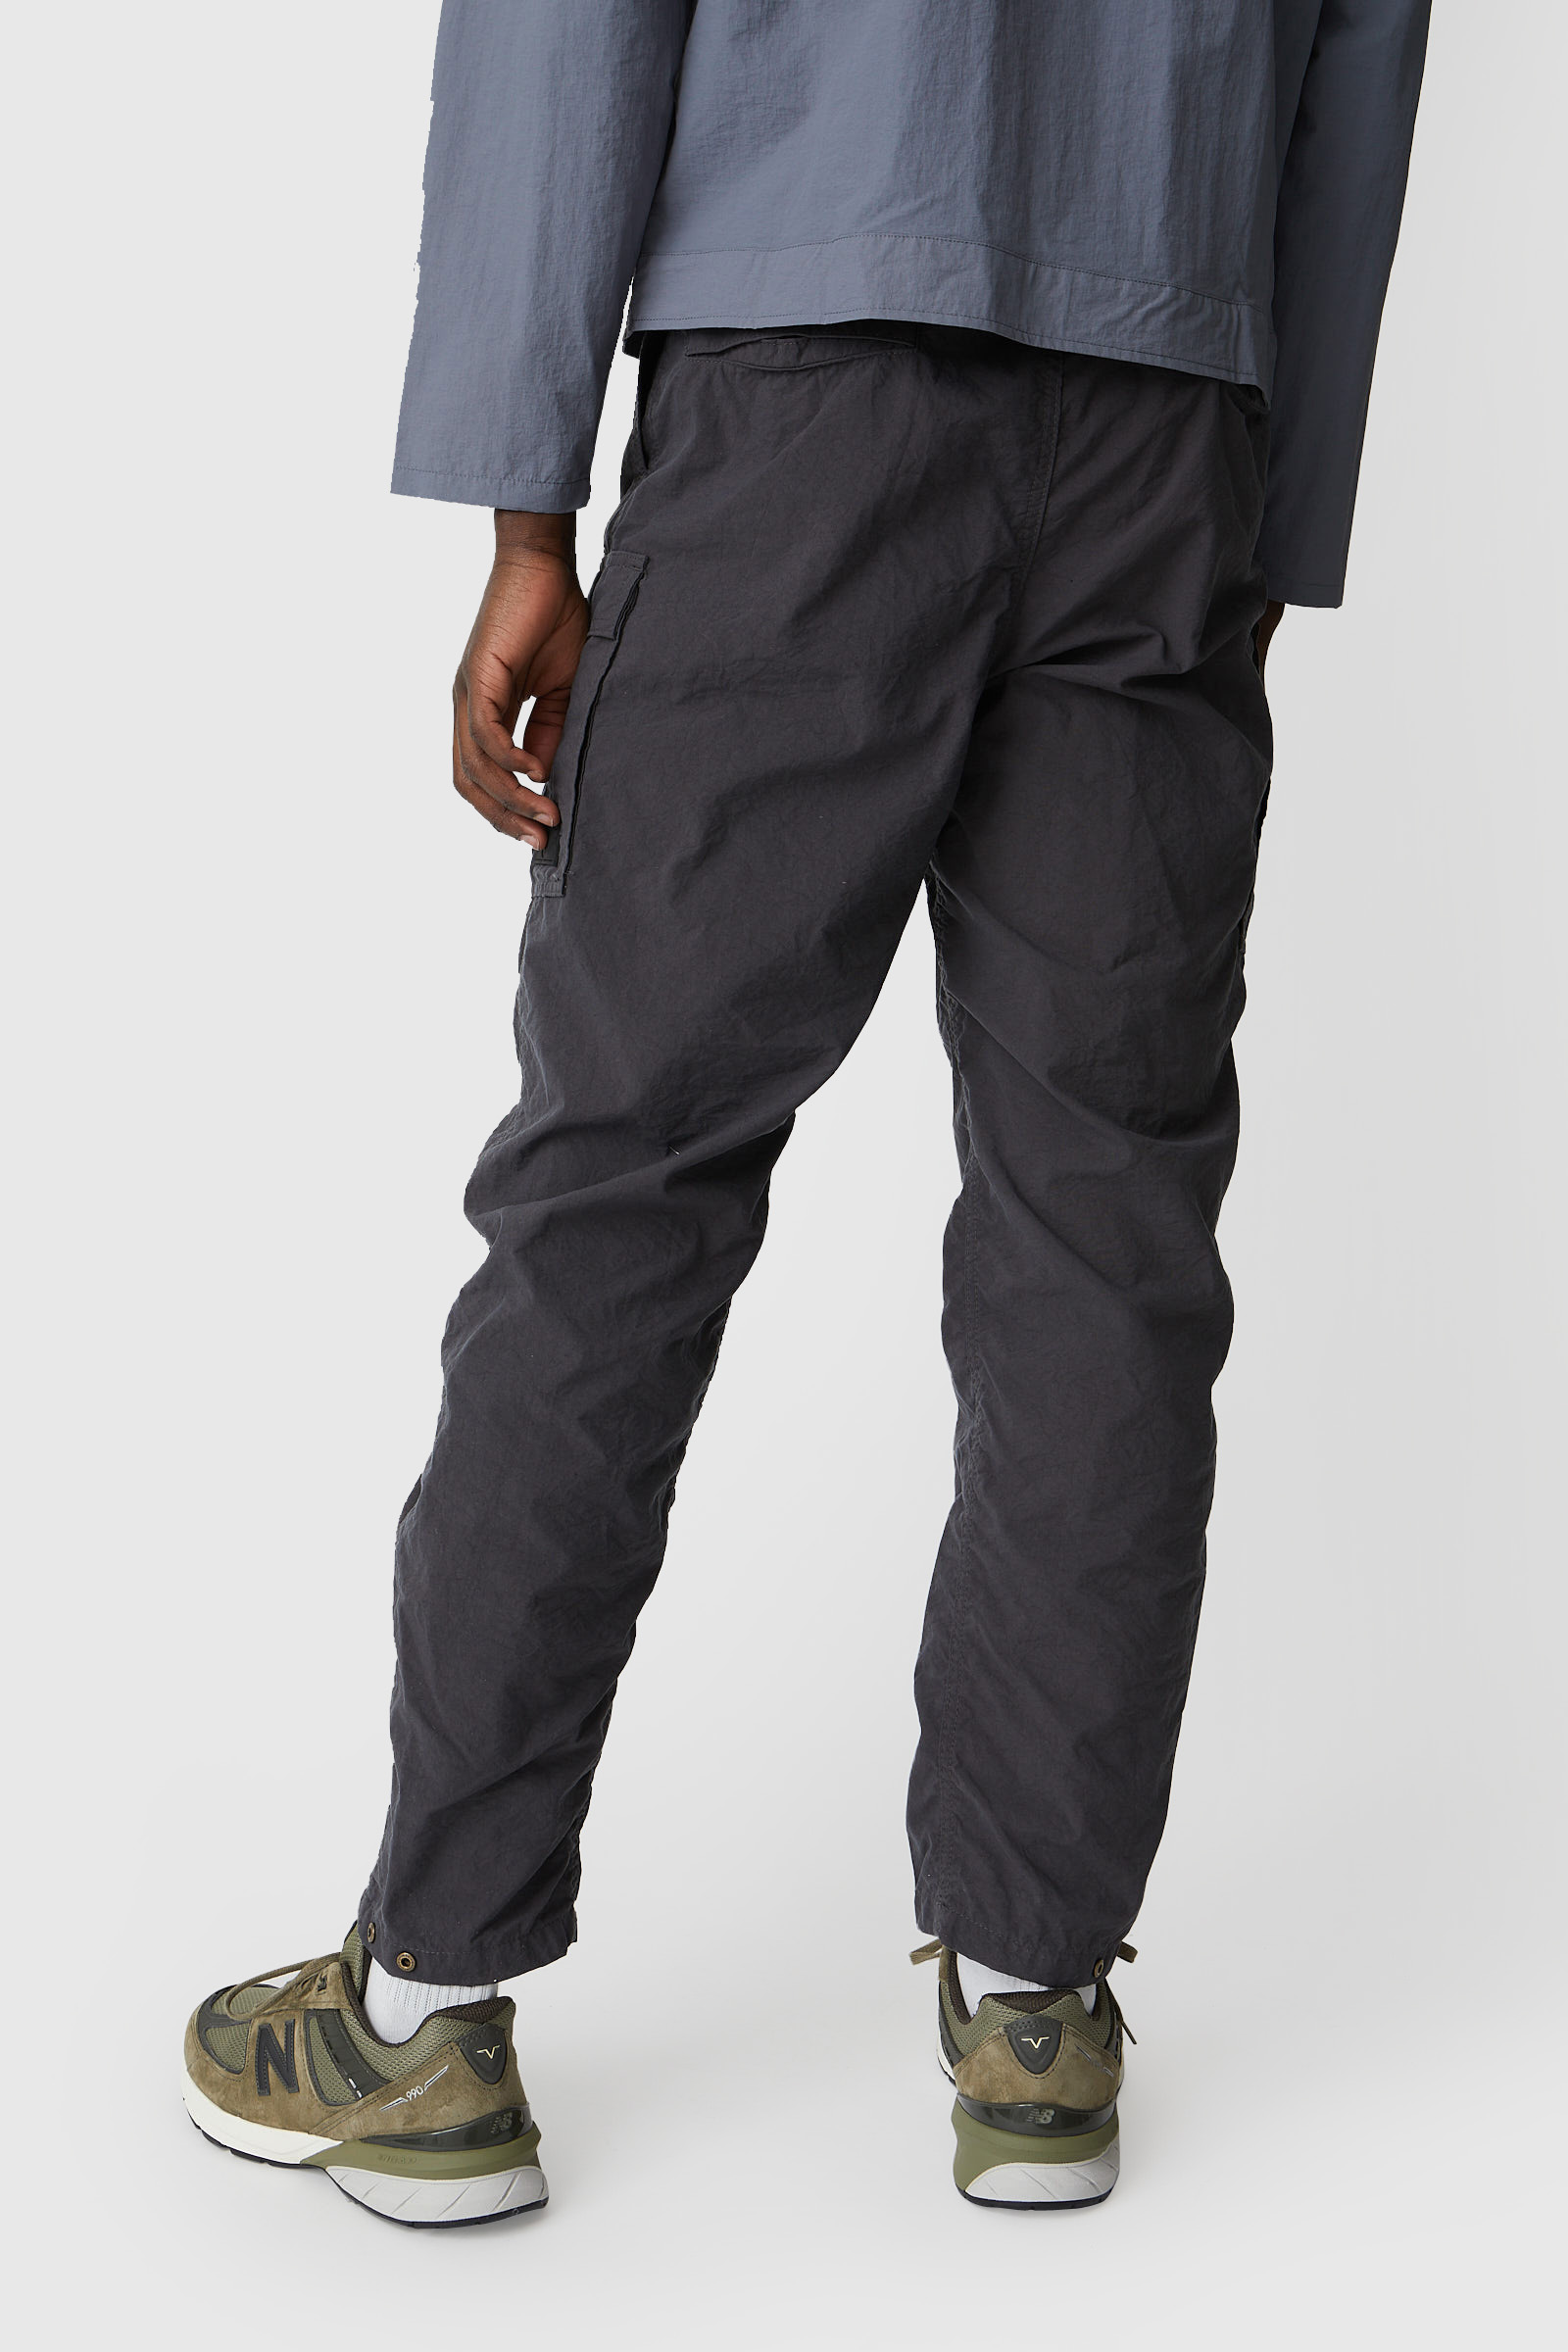 charcoal grey cargo pants